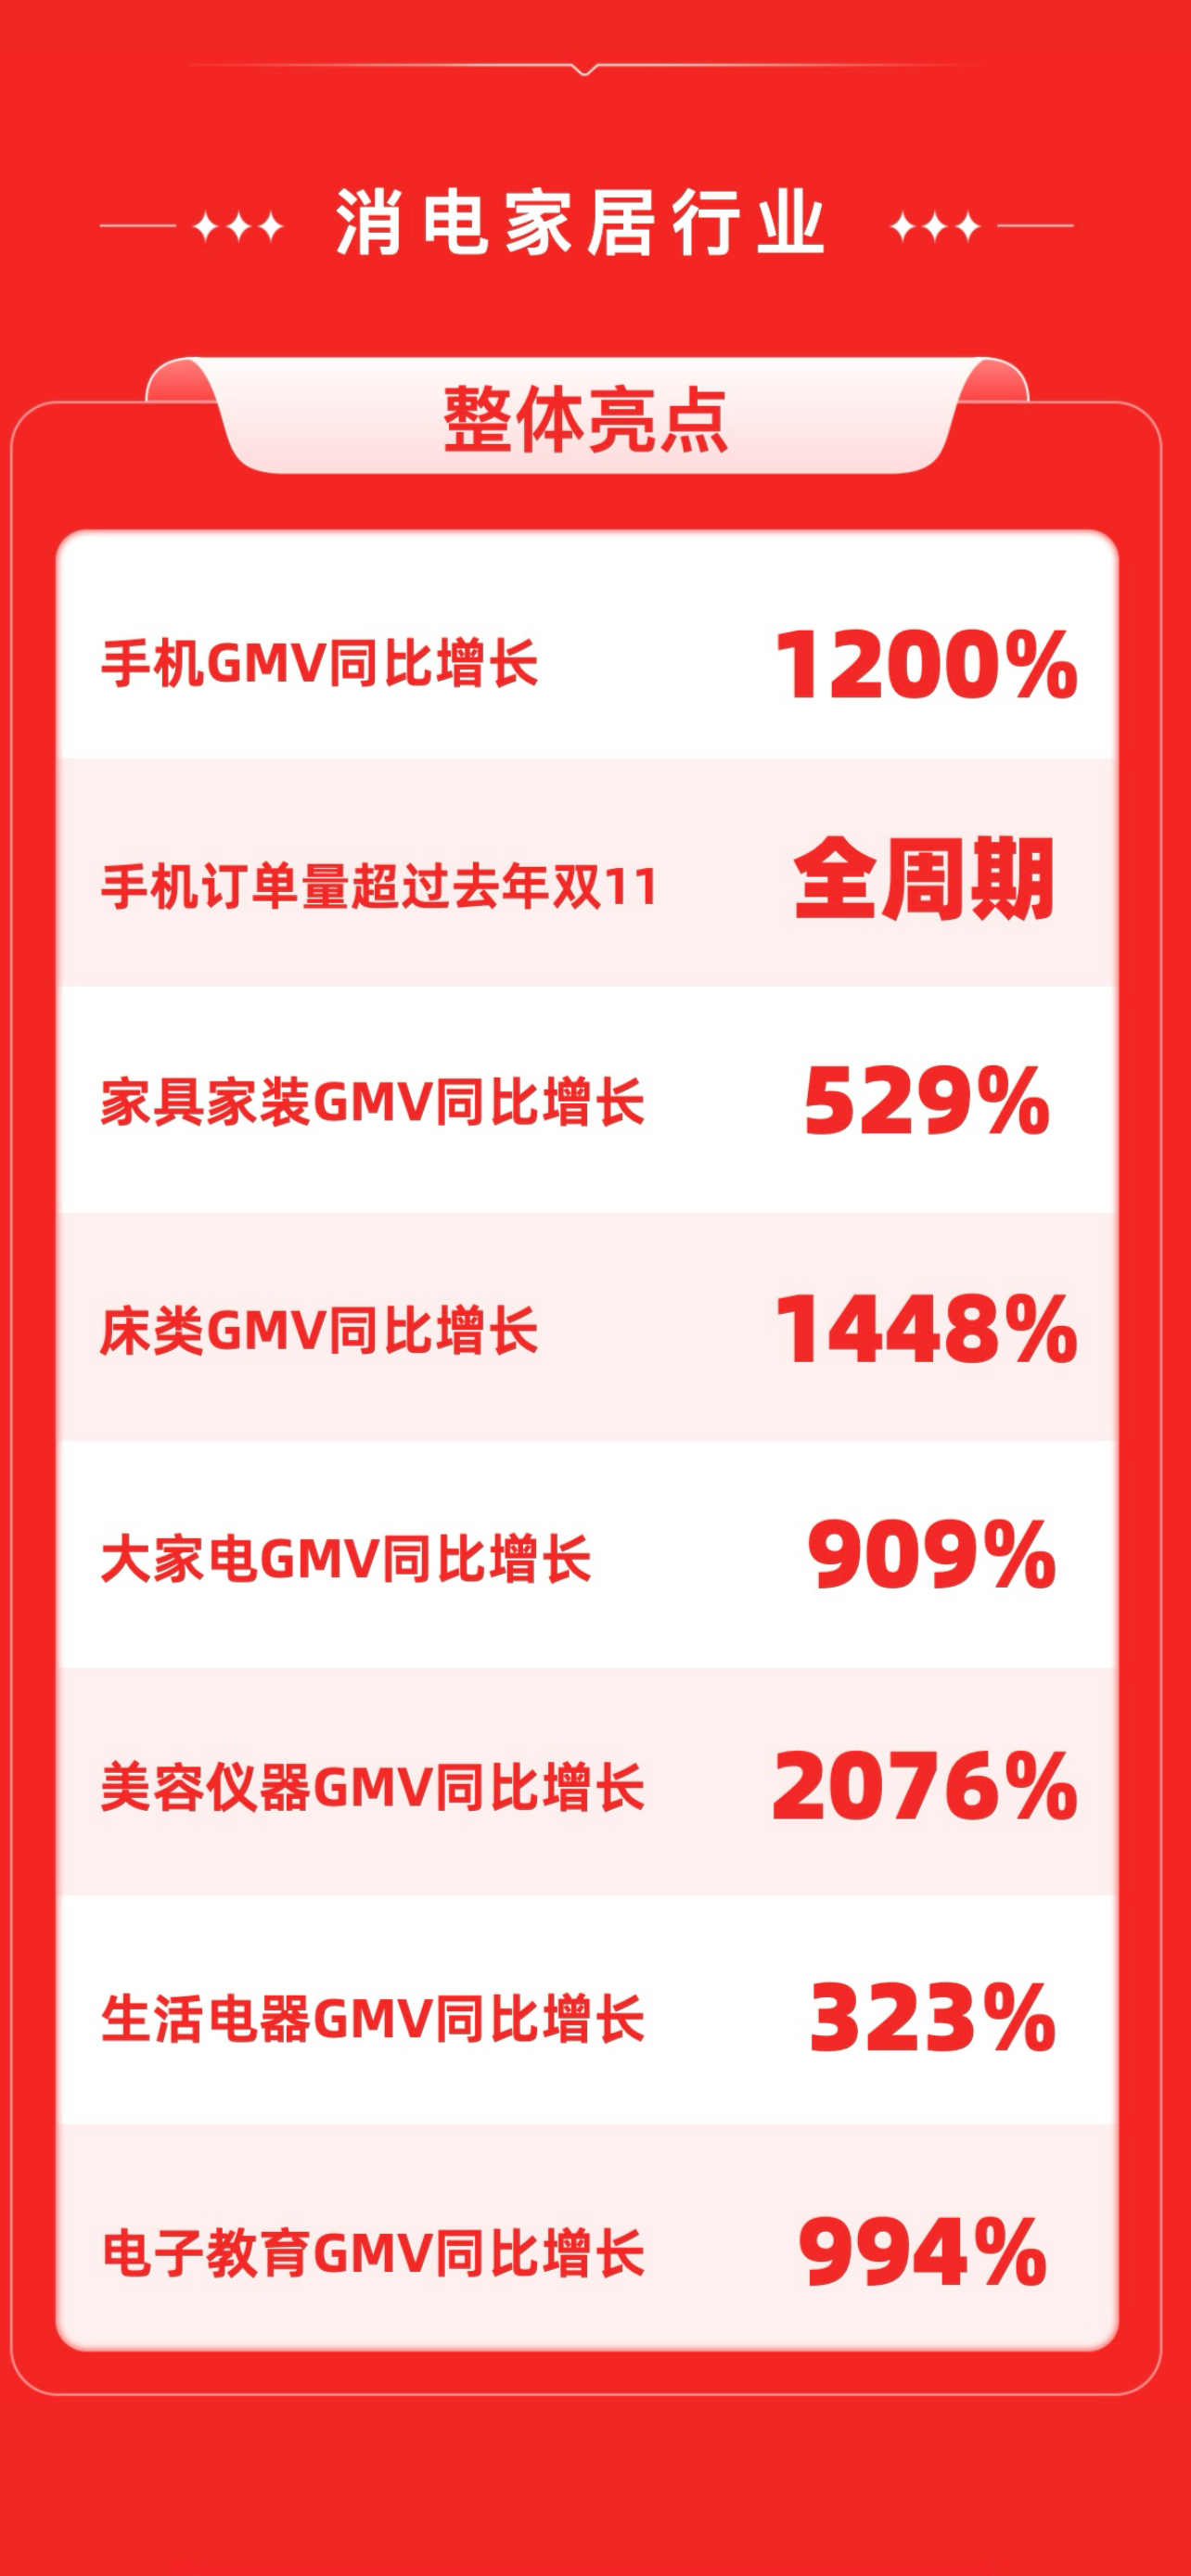 快手双11购物节尾款期成绩亮眼，消电家居行业GMV同比增长648%